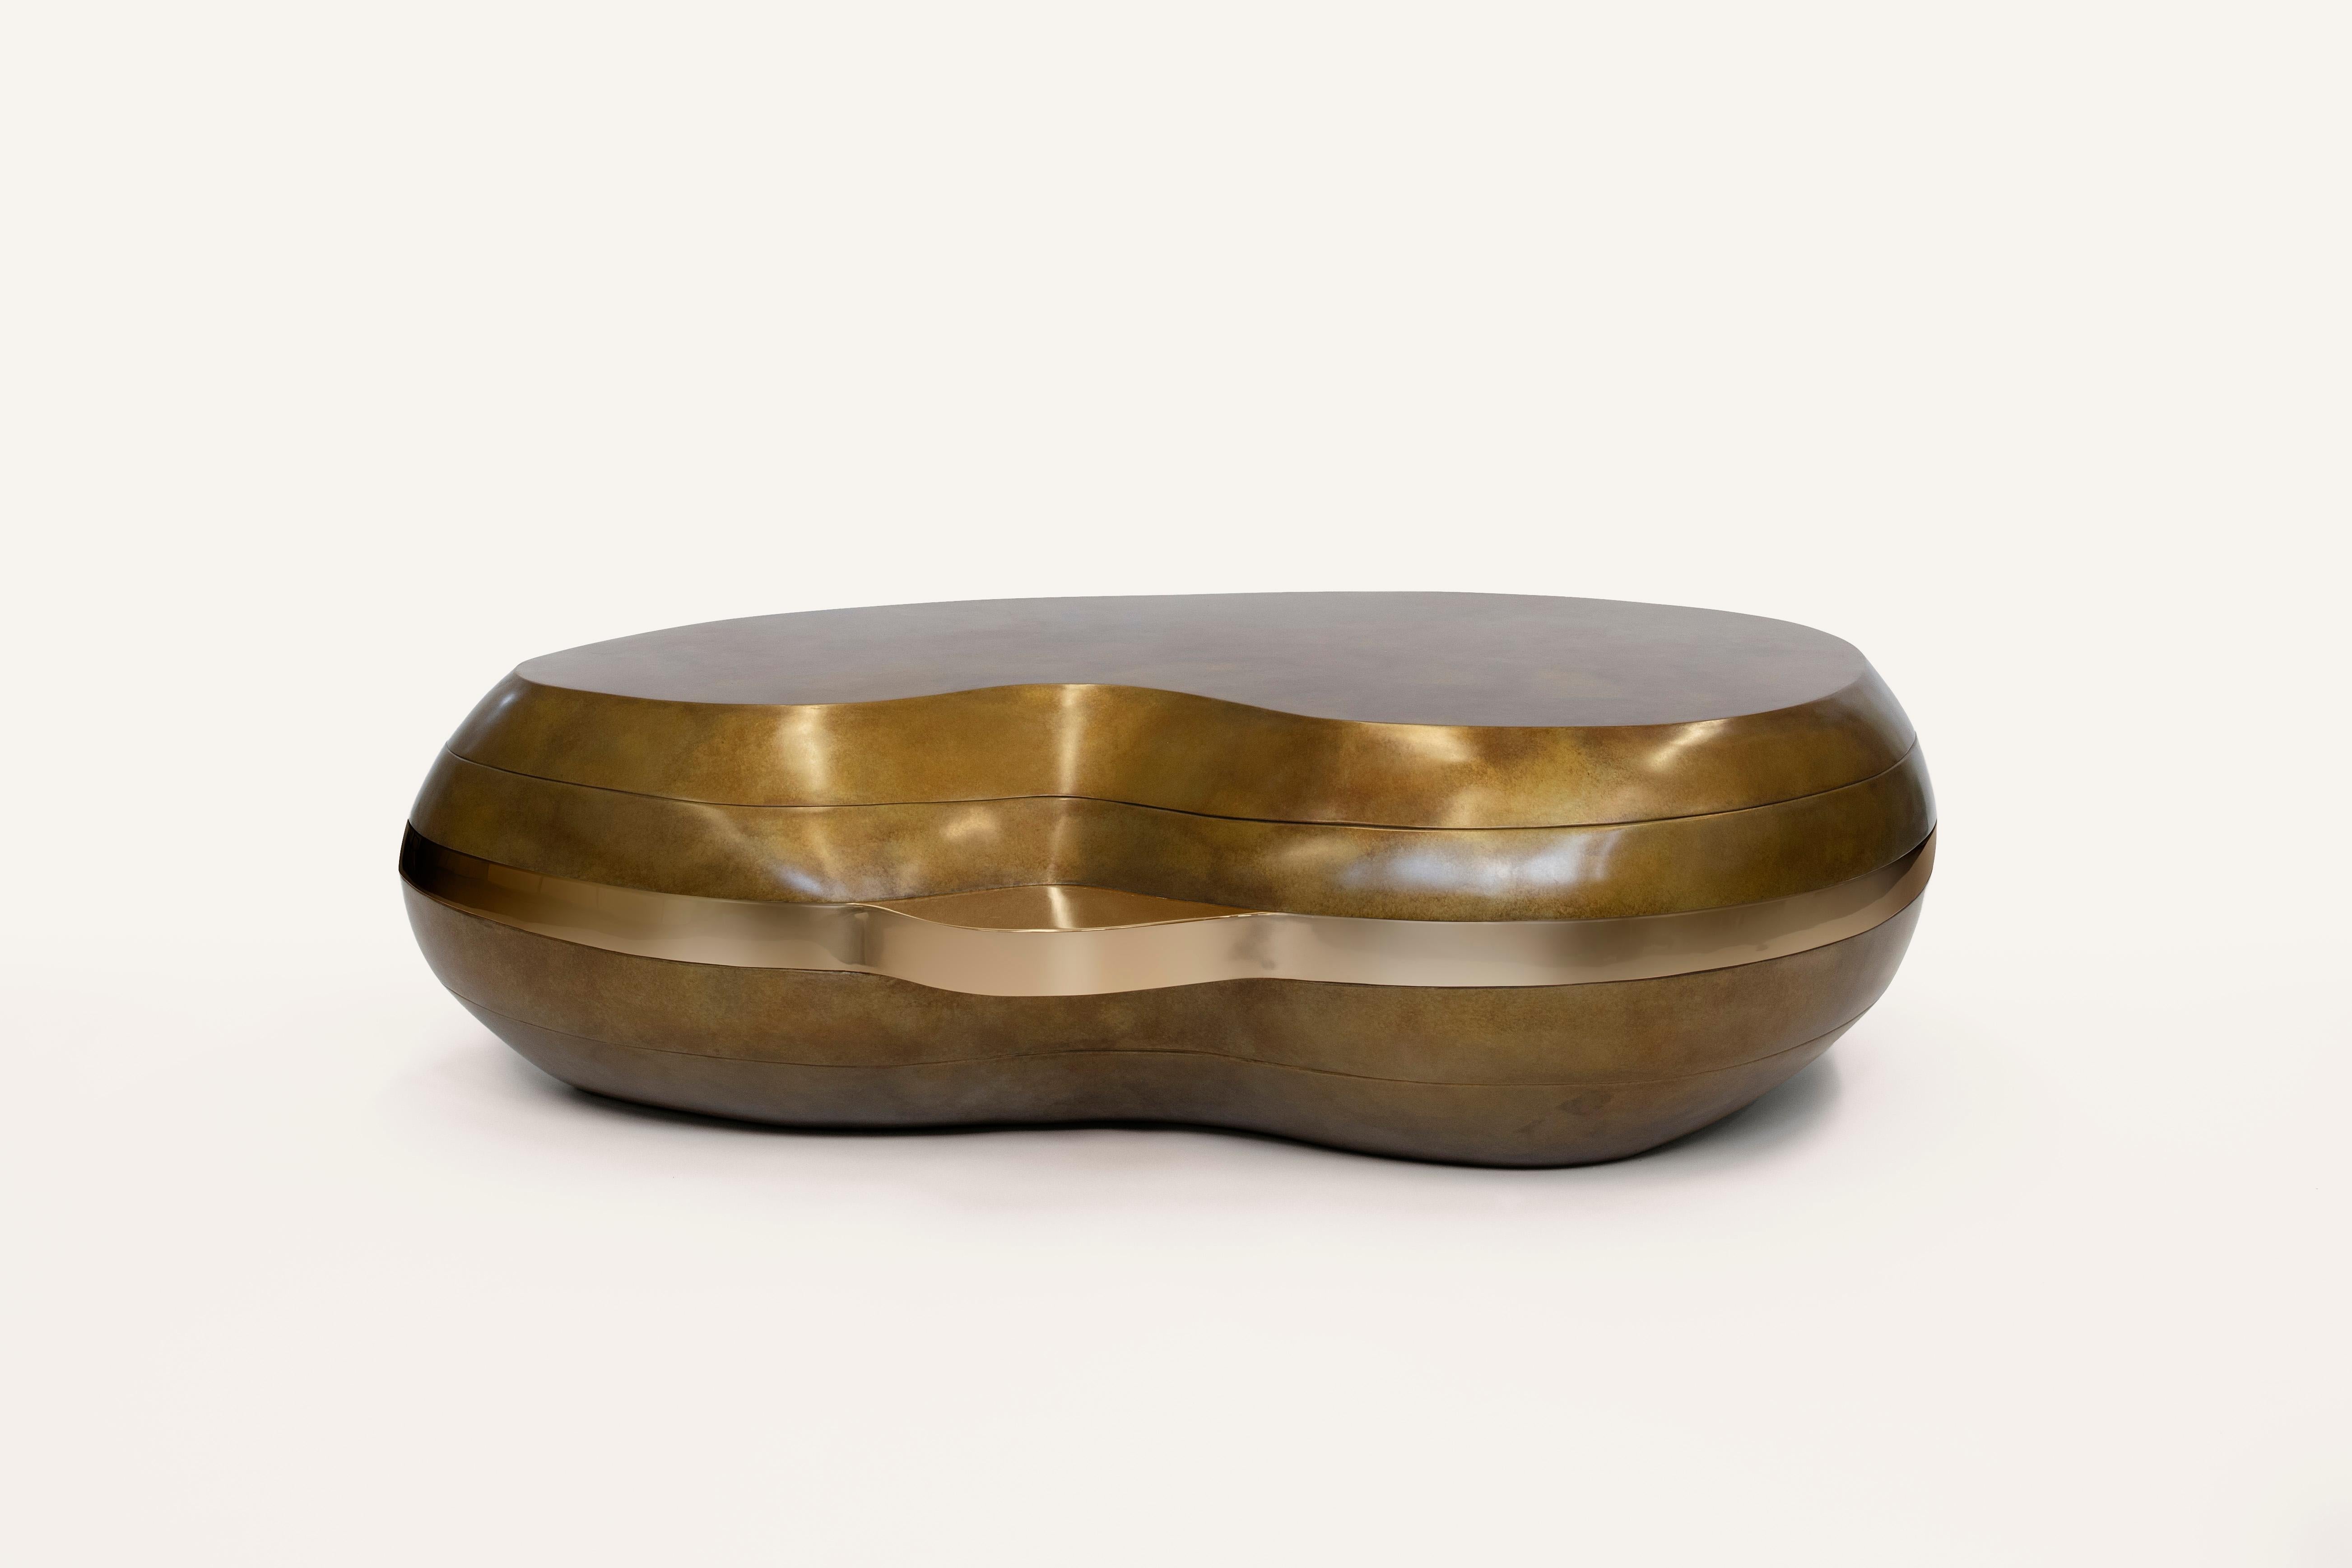 Der Layered Couchtisch ist Teil unserer Stone Collection und wurde von den weichen Kurven und ausgeprägten Schichten von Trommelsteinen aus dem Meer inspiriert. Dieser Tisch zeigt sorgfältig von Hand modellierte, konvexe Schichten aus Bronze mit